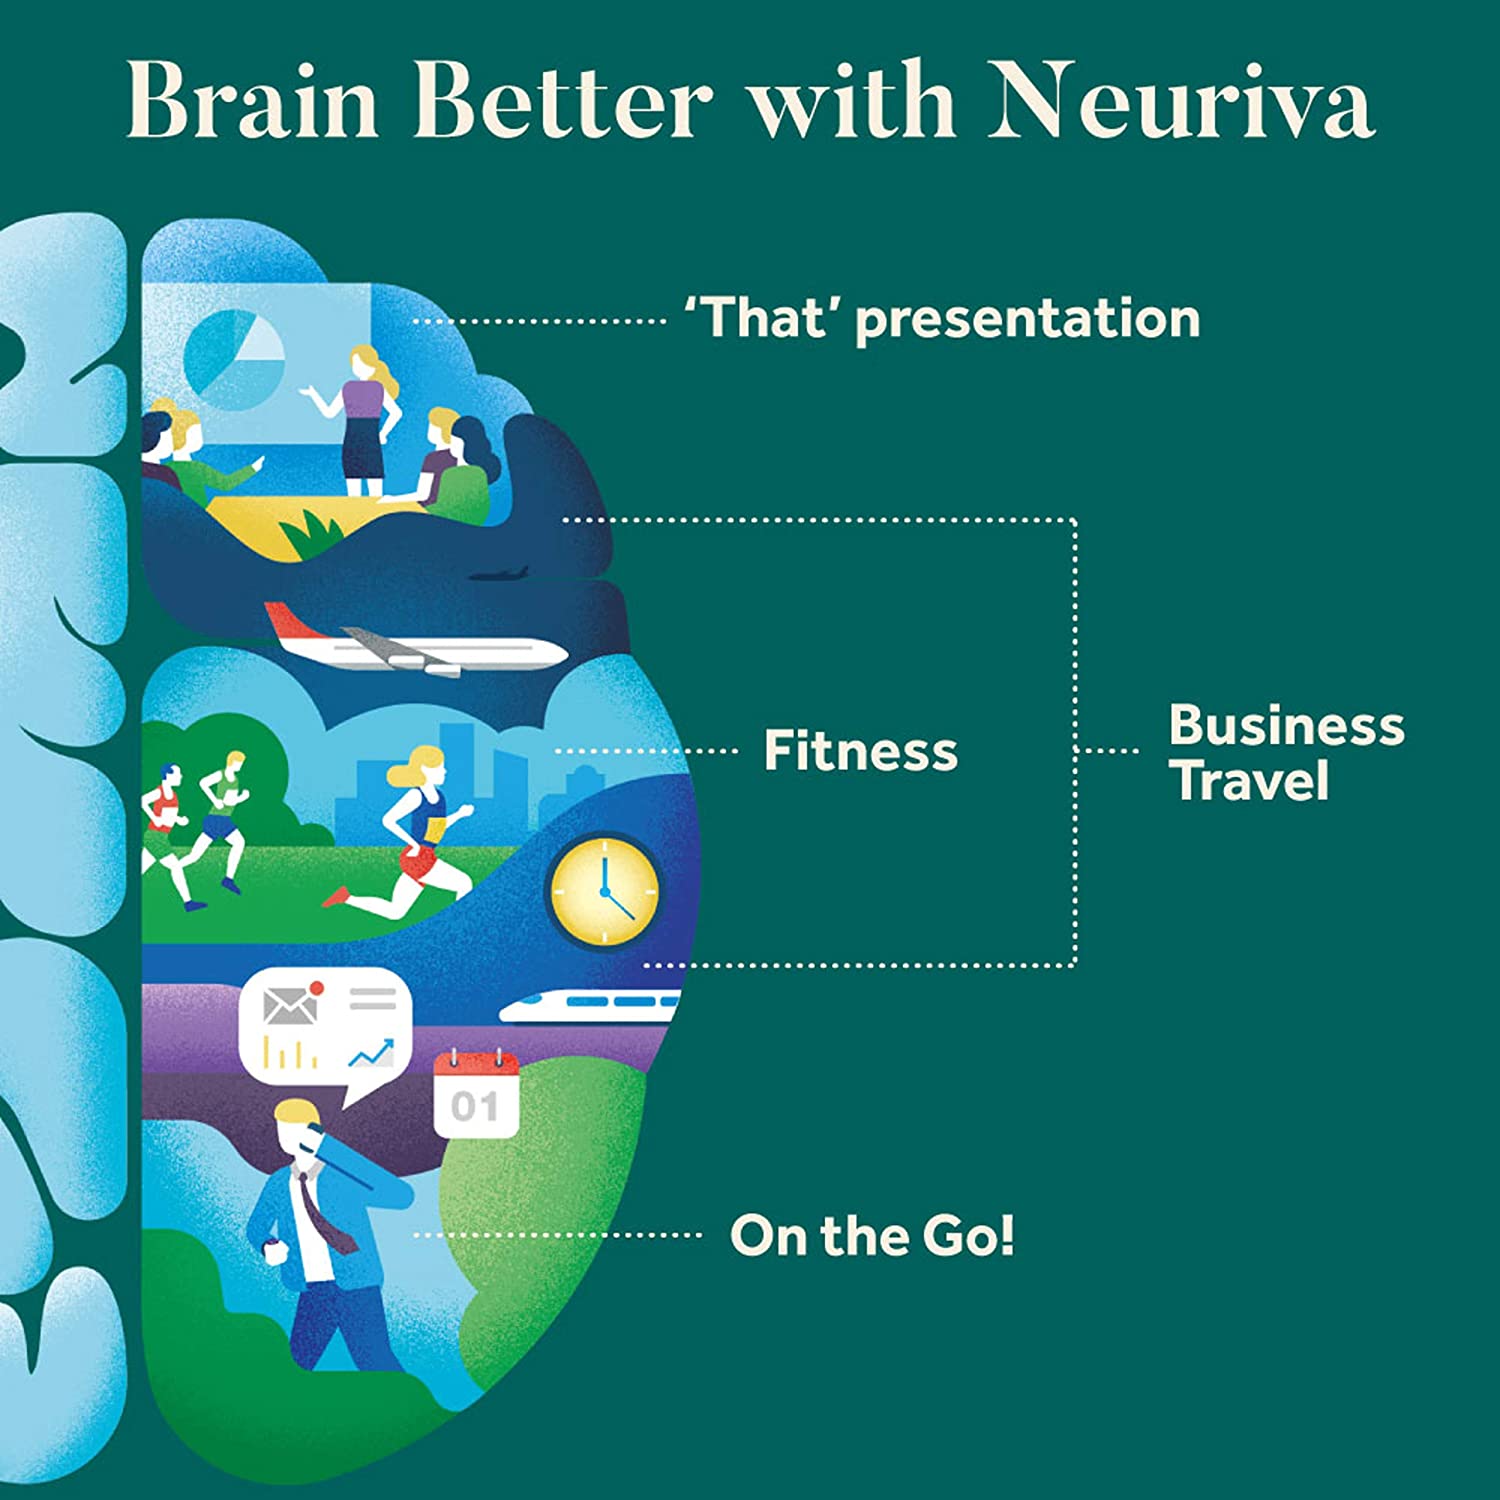 neuriva reviews, neuriva plus reviews, neuriva brain performance reviews, neuriva brain supplement reviews, neuriva side effects, neuriva ingredients